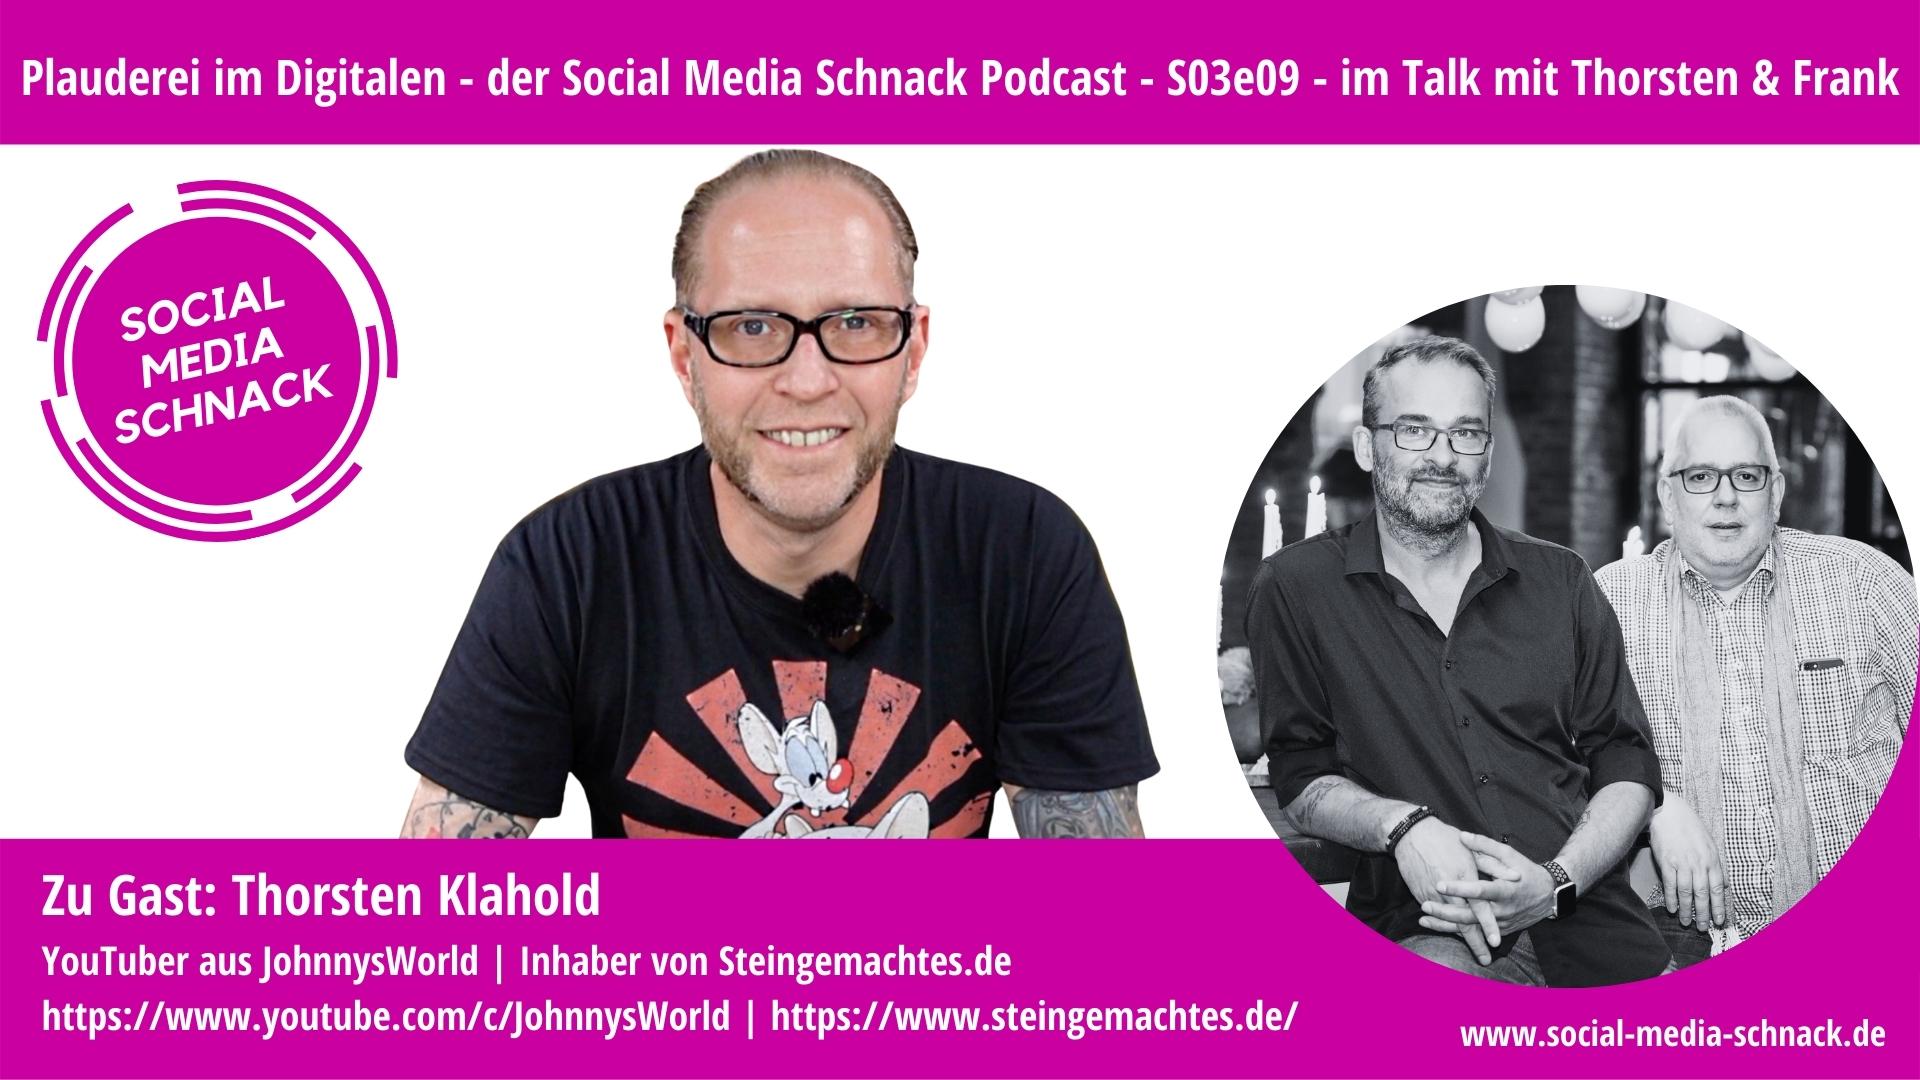 Social Media Schnack – S03e09 – Im Gespräch mit: Thorsten Klahold, Johnny’s World / steingemachtes.de